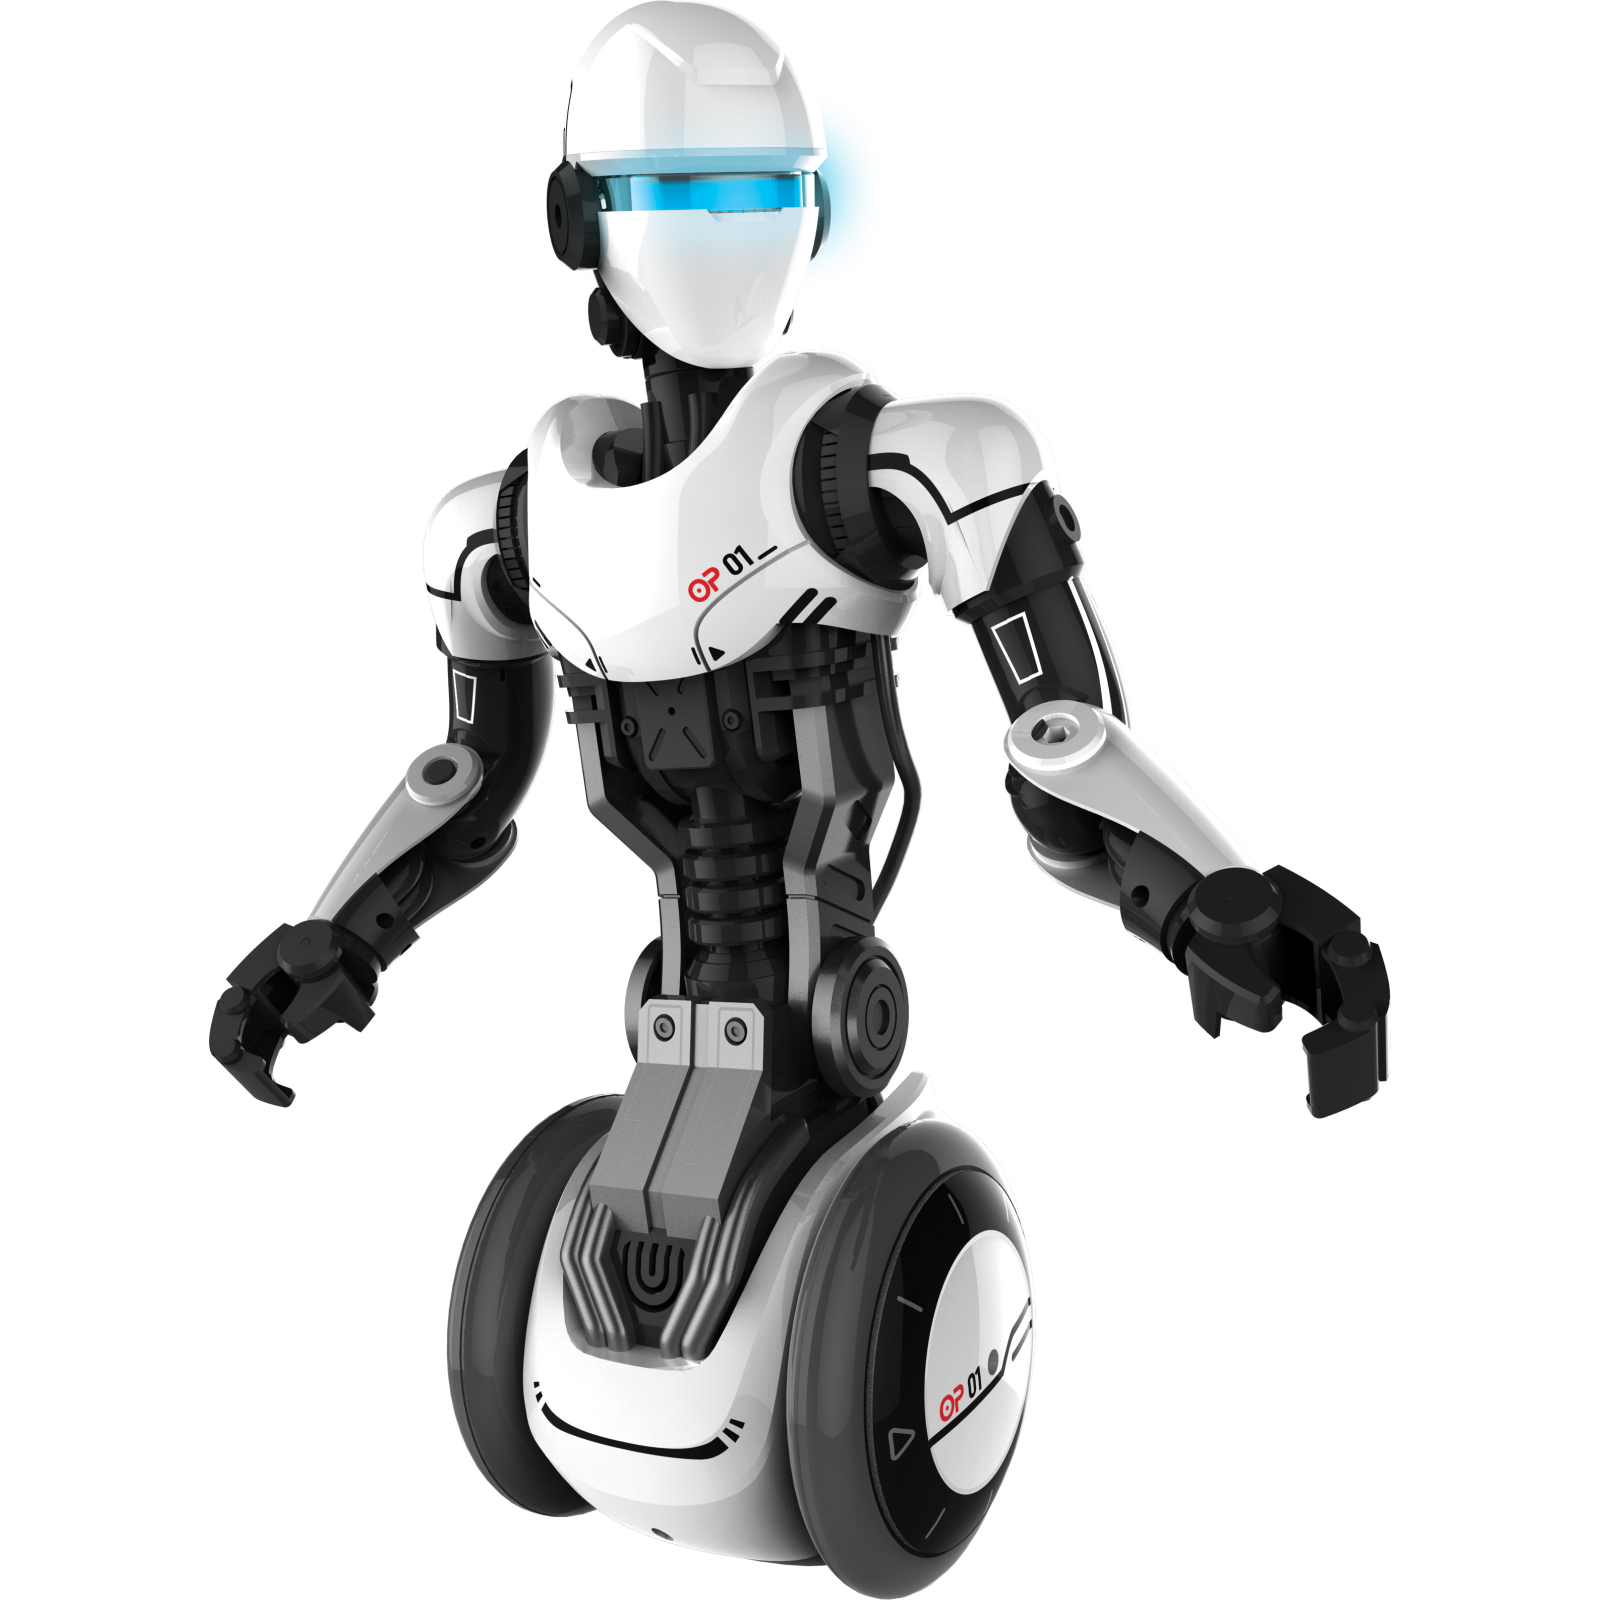 Интерактивная игрушка Silverlit Робот-андроид Silverlit O.P. One (88550) изображение 2